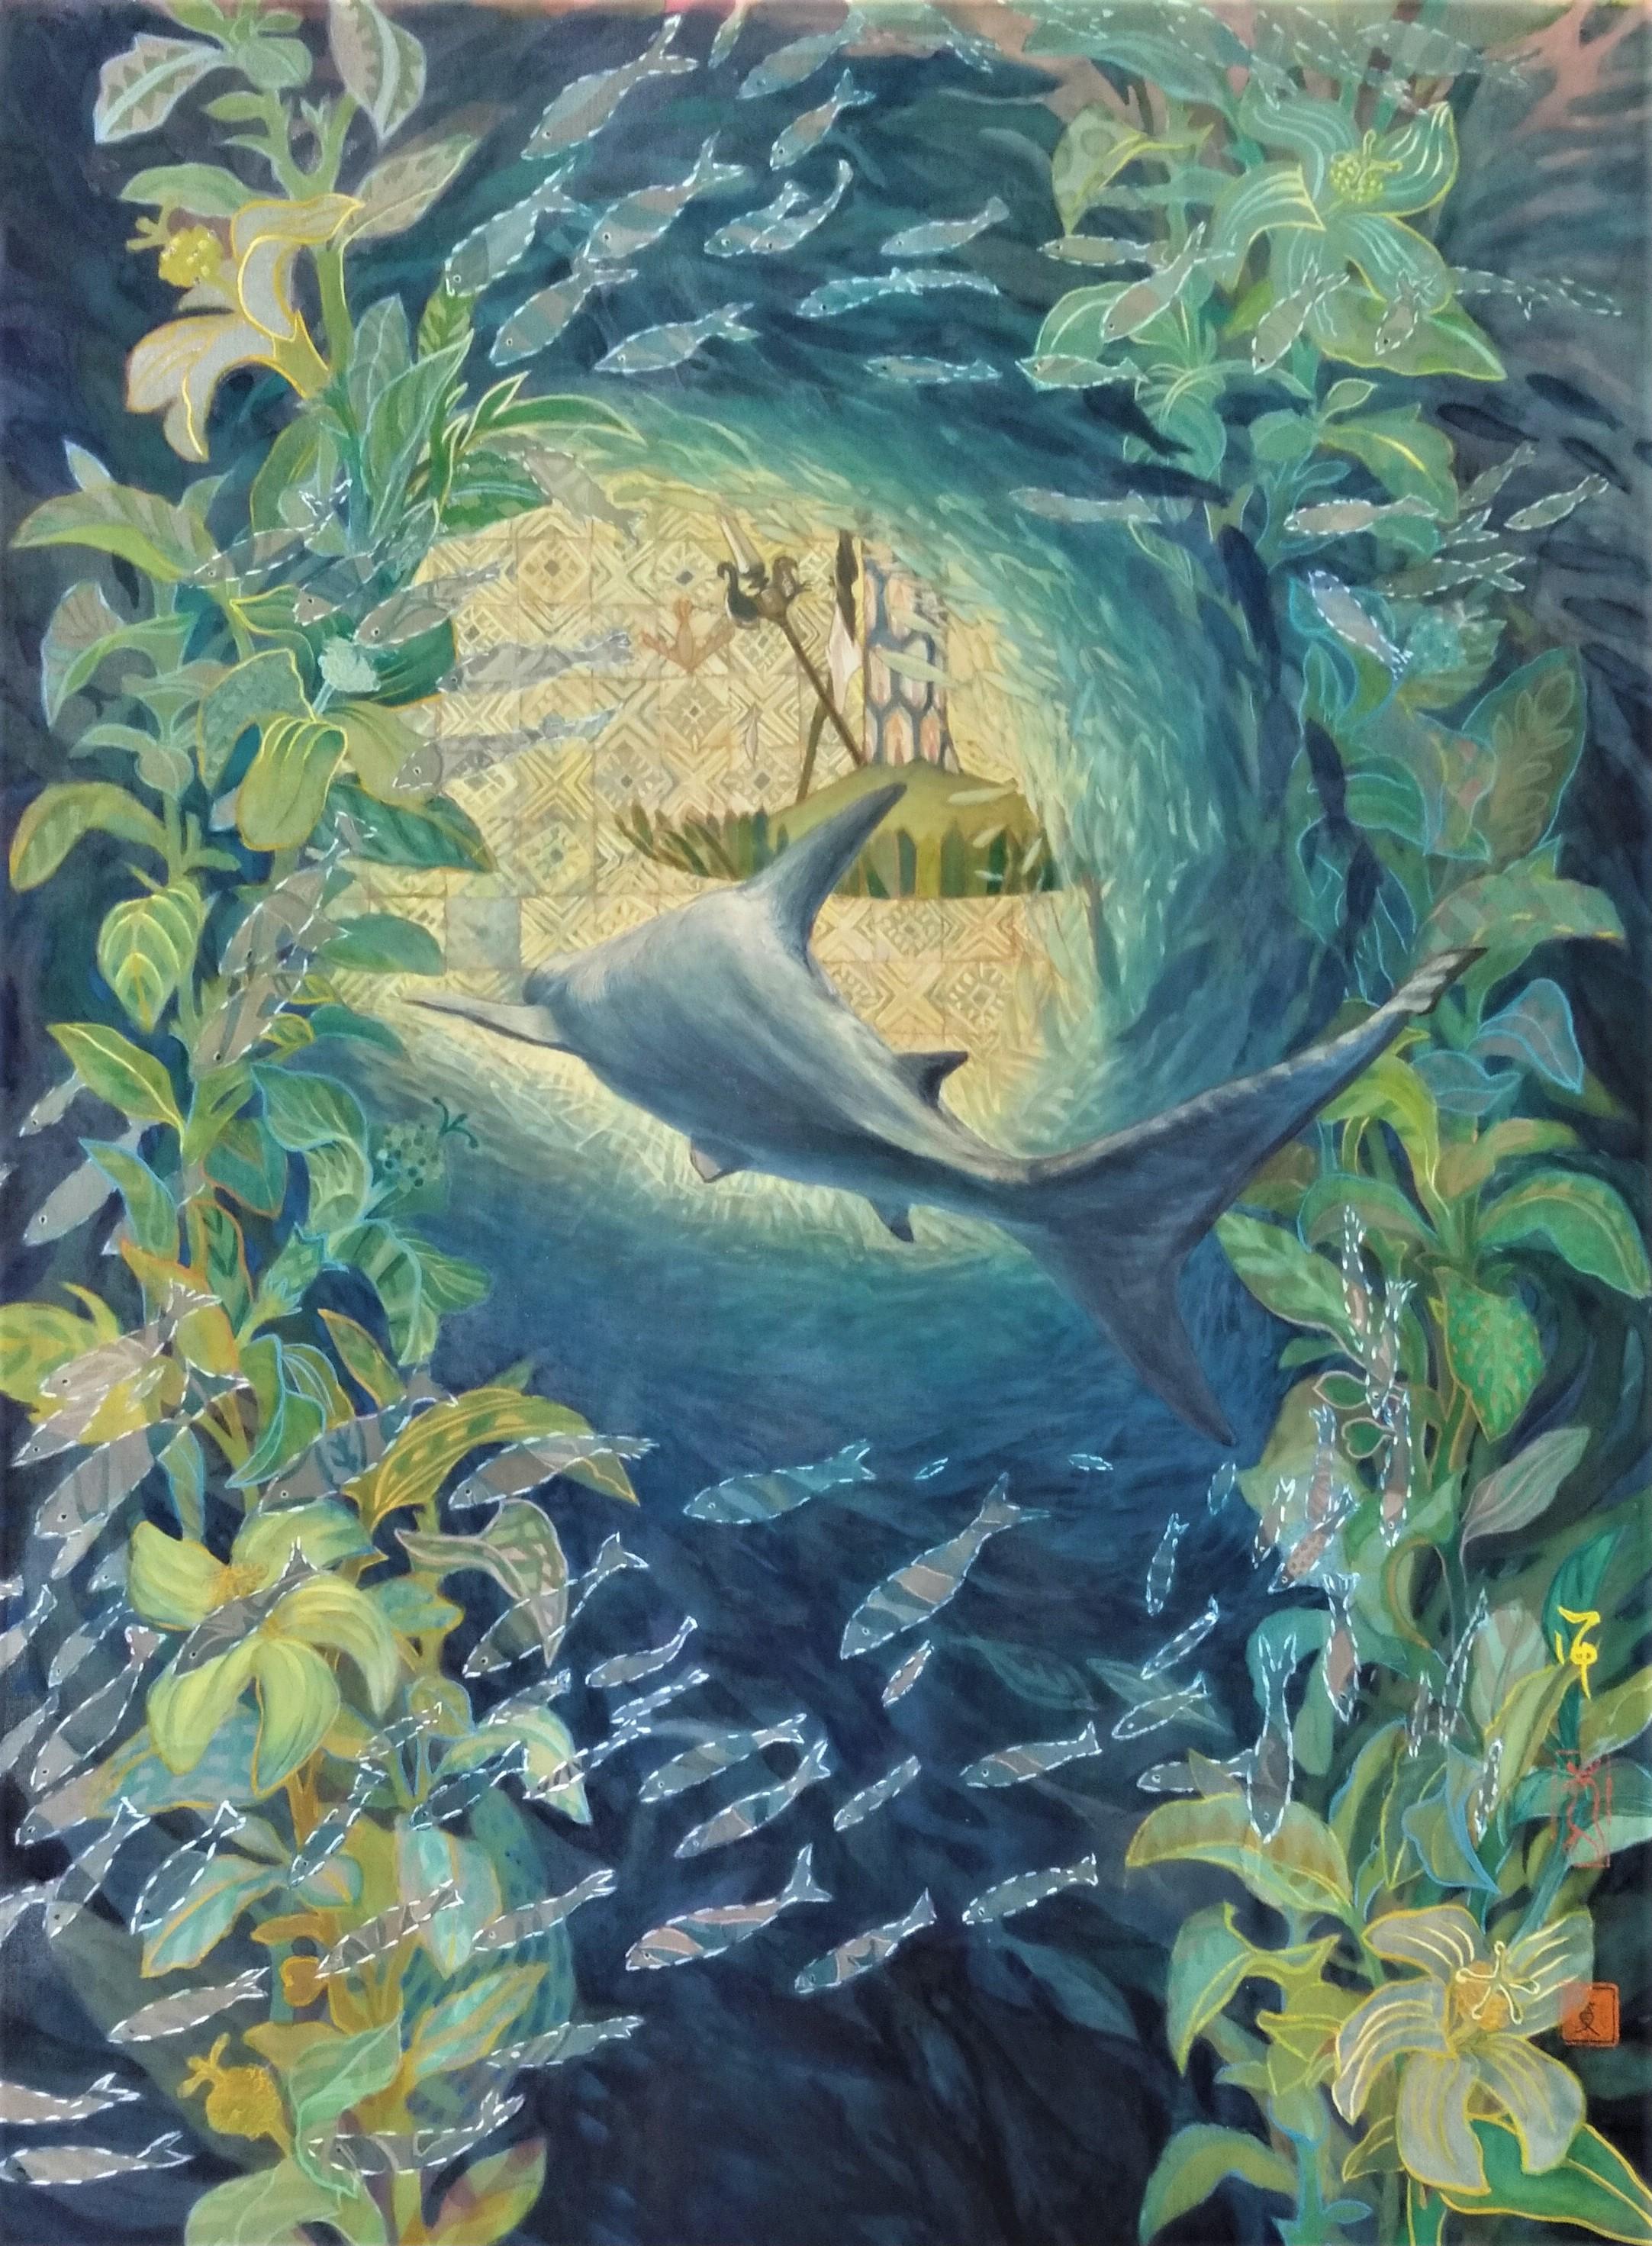 Landscape Painting Maki Kuchida - « In a Forest of Fishes », peinture japonaise de paysage marin aux pigments de soie sur la paix de la mer 